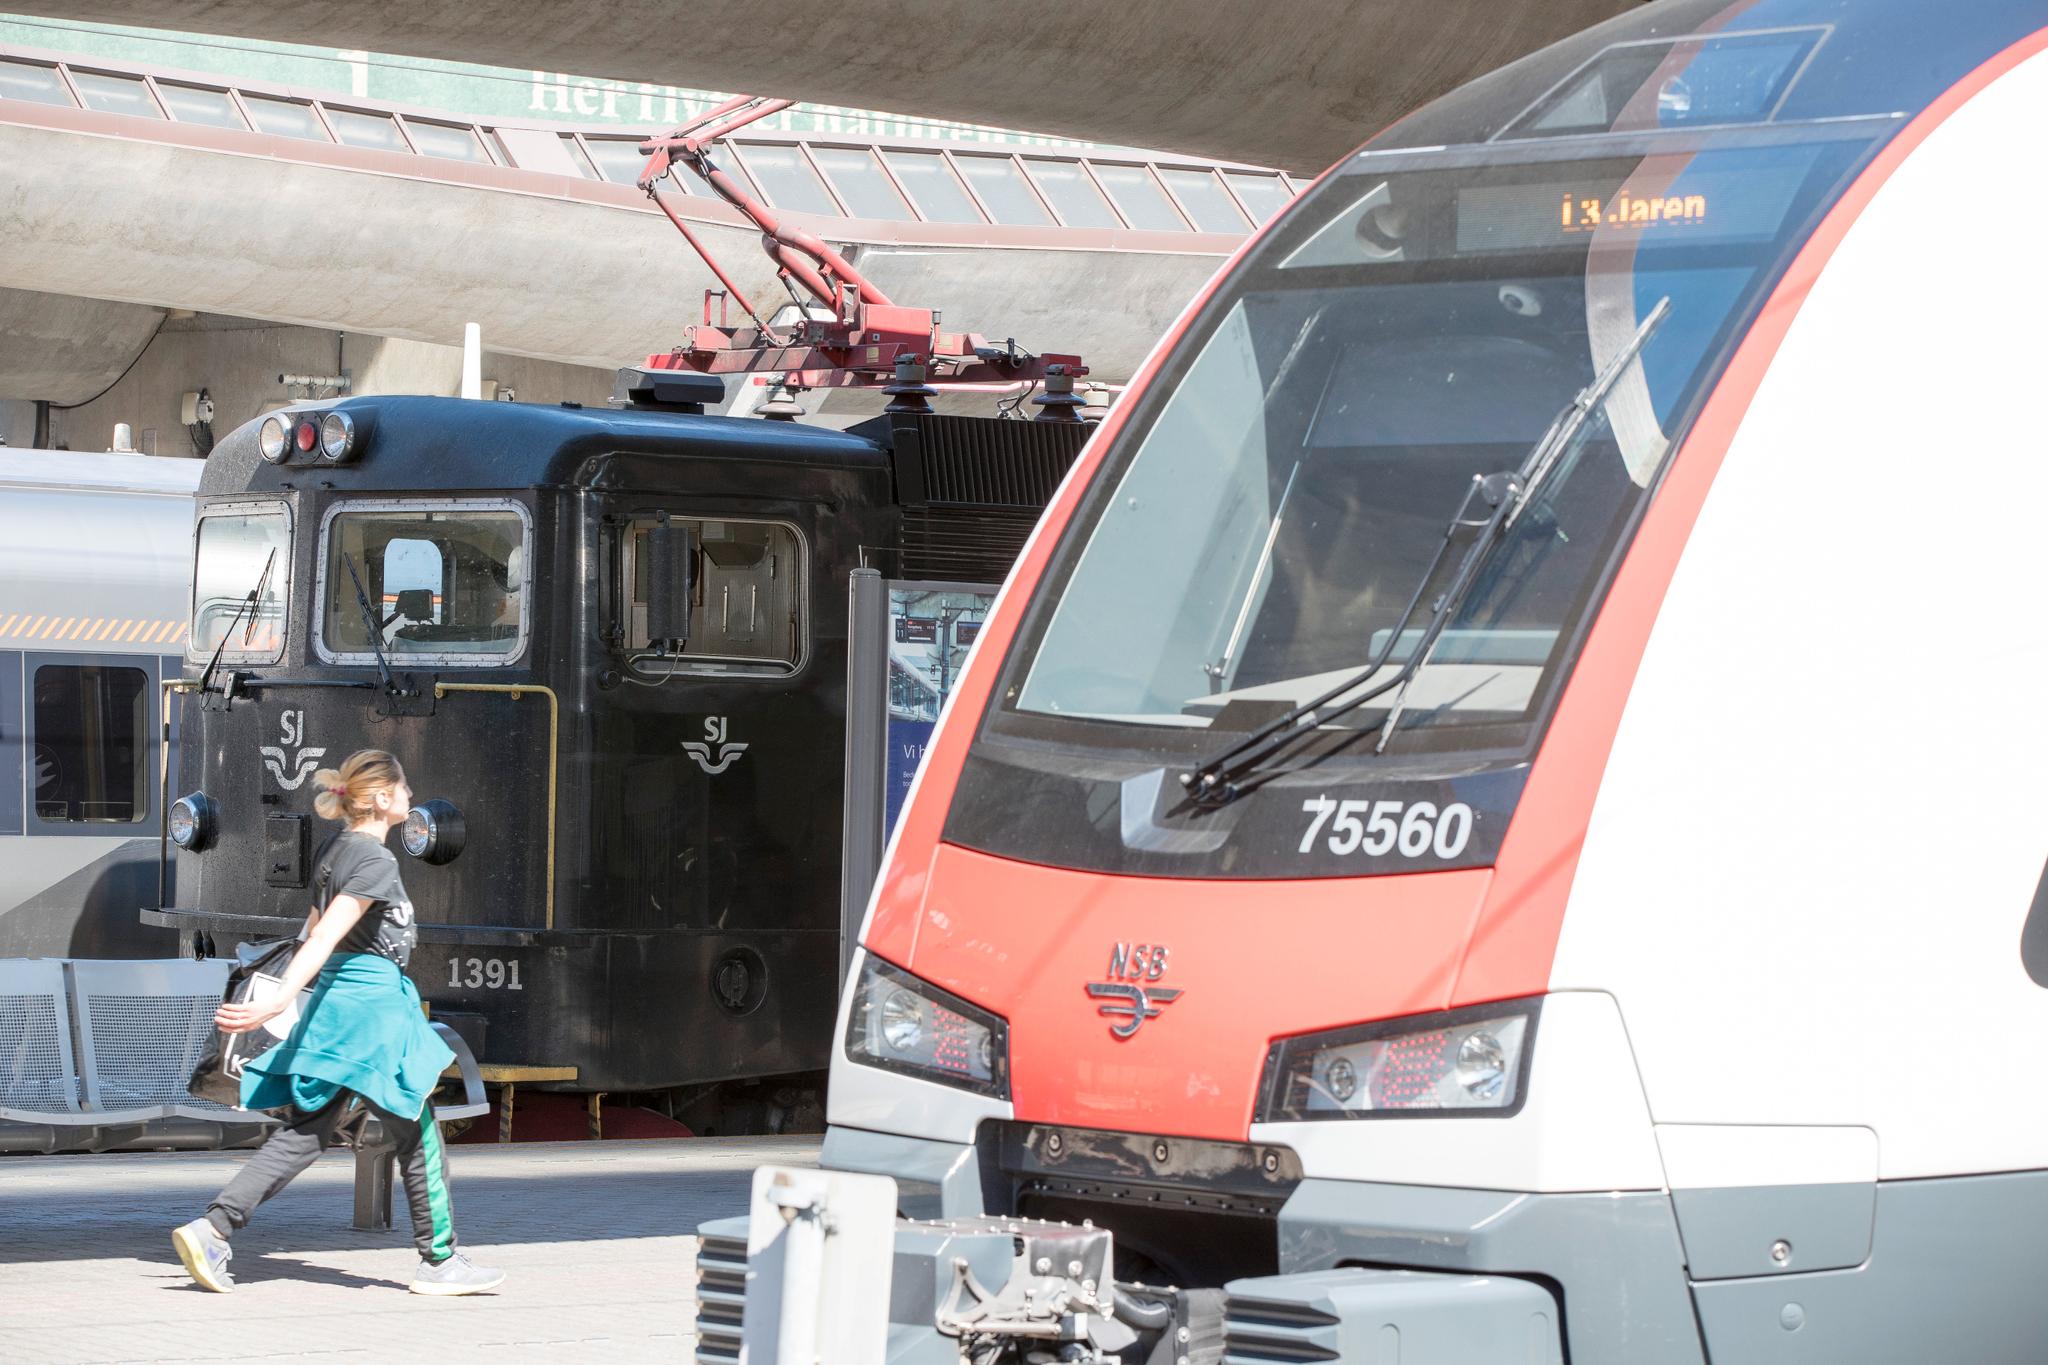 Det tar tid å bygge jernbane. I 1992 forelå NSB-rapporter for både for Nord-Norgebane og dobbeltsporet InterCity på Østlandet. Fortsatt i 2019 stopper moderne InterCity-spor i Drammen, før Eidsvoll og før Moss. Nord-Norge-banen er hverken bygget eller planlagt.